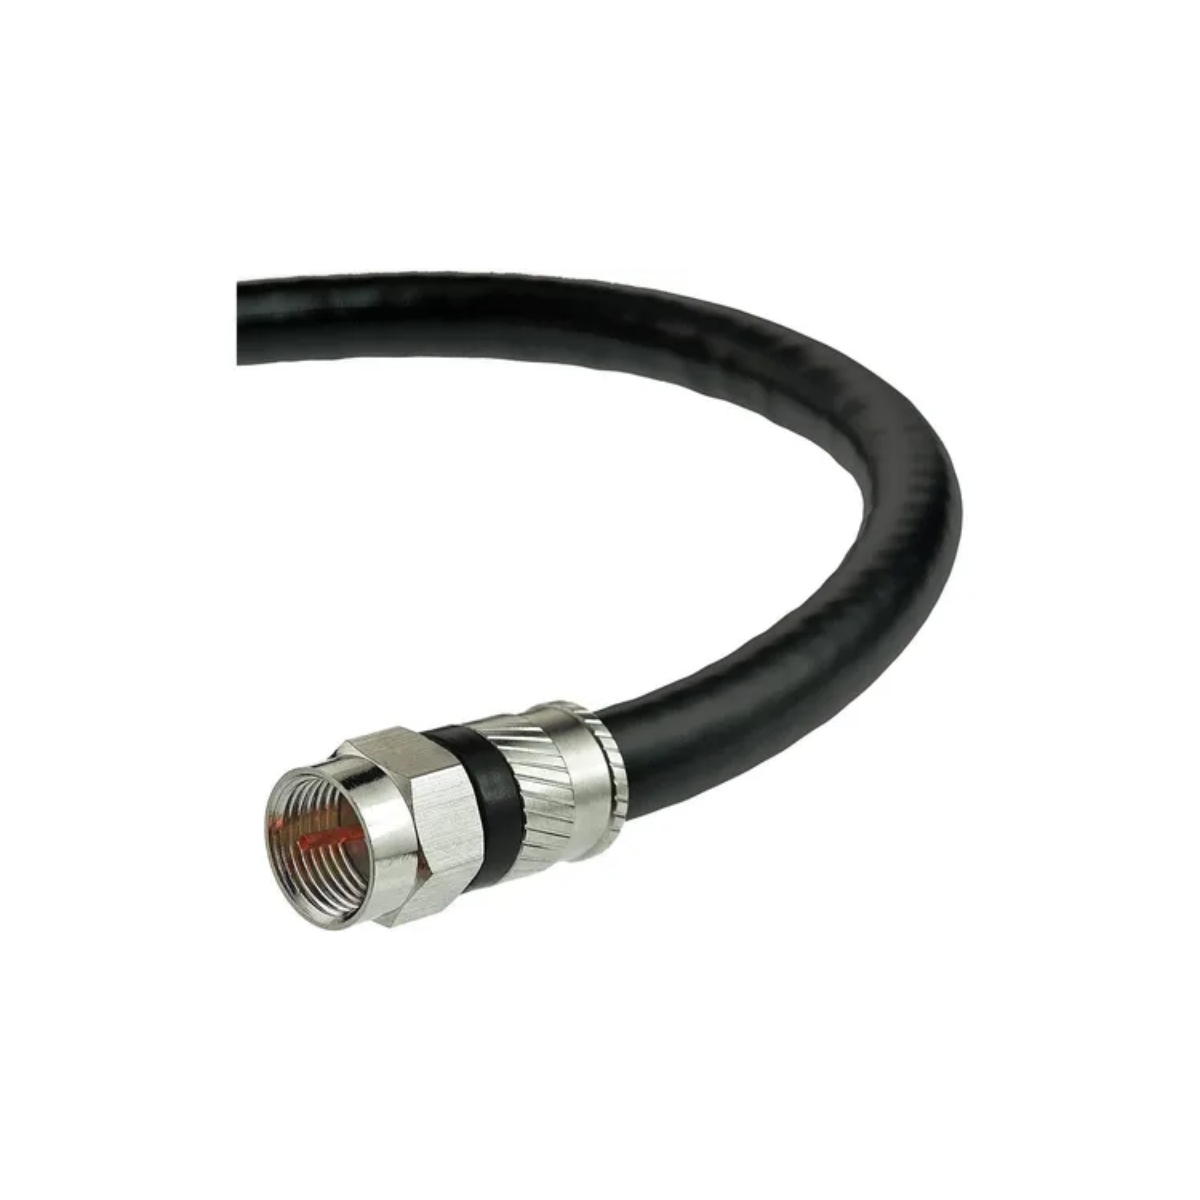 Cable Coaxial Negro con Conector F59